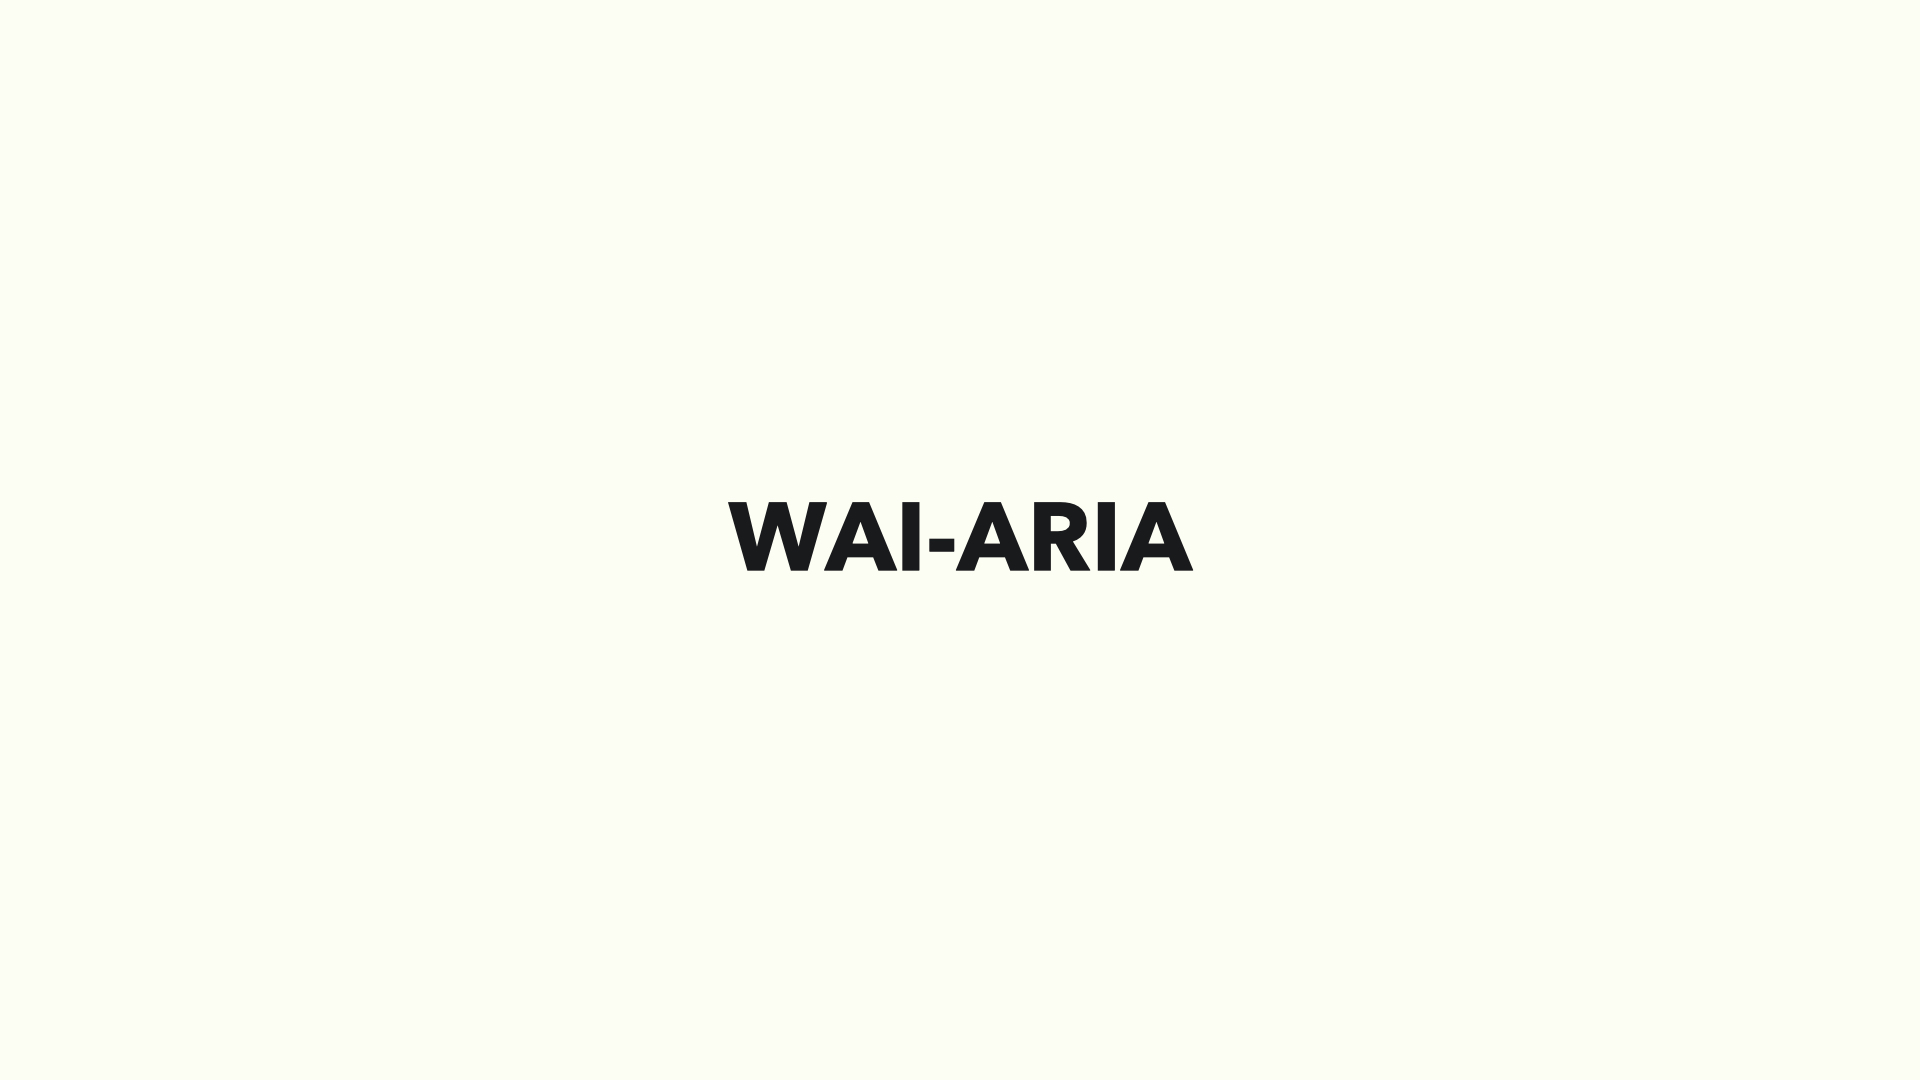 WAI-ARIA